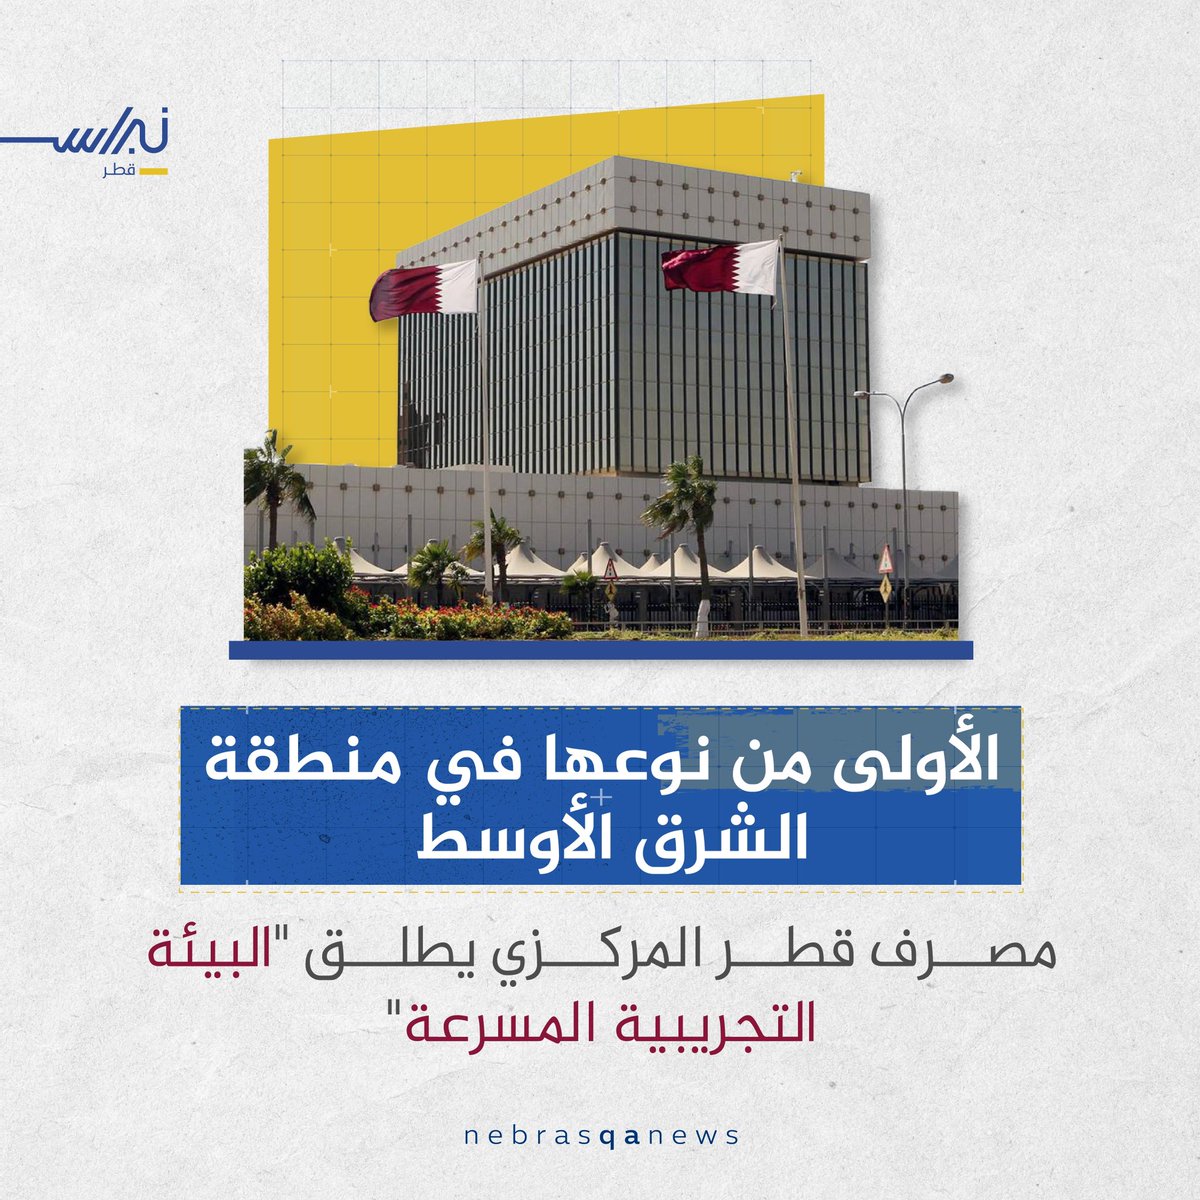 🟡🔵 مصرف قطر المركزي يصدر البيئة التجريبية المسرّعة
#نبراس_قطر 
#مصرف_قطر_المركزي